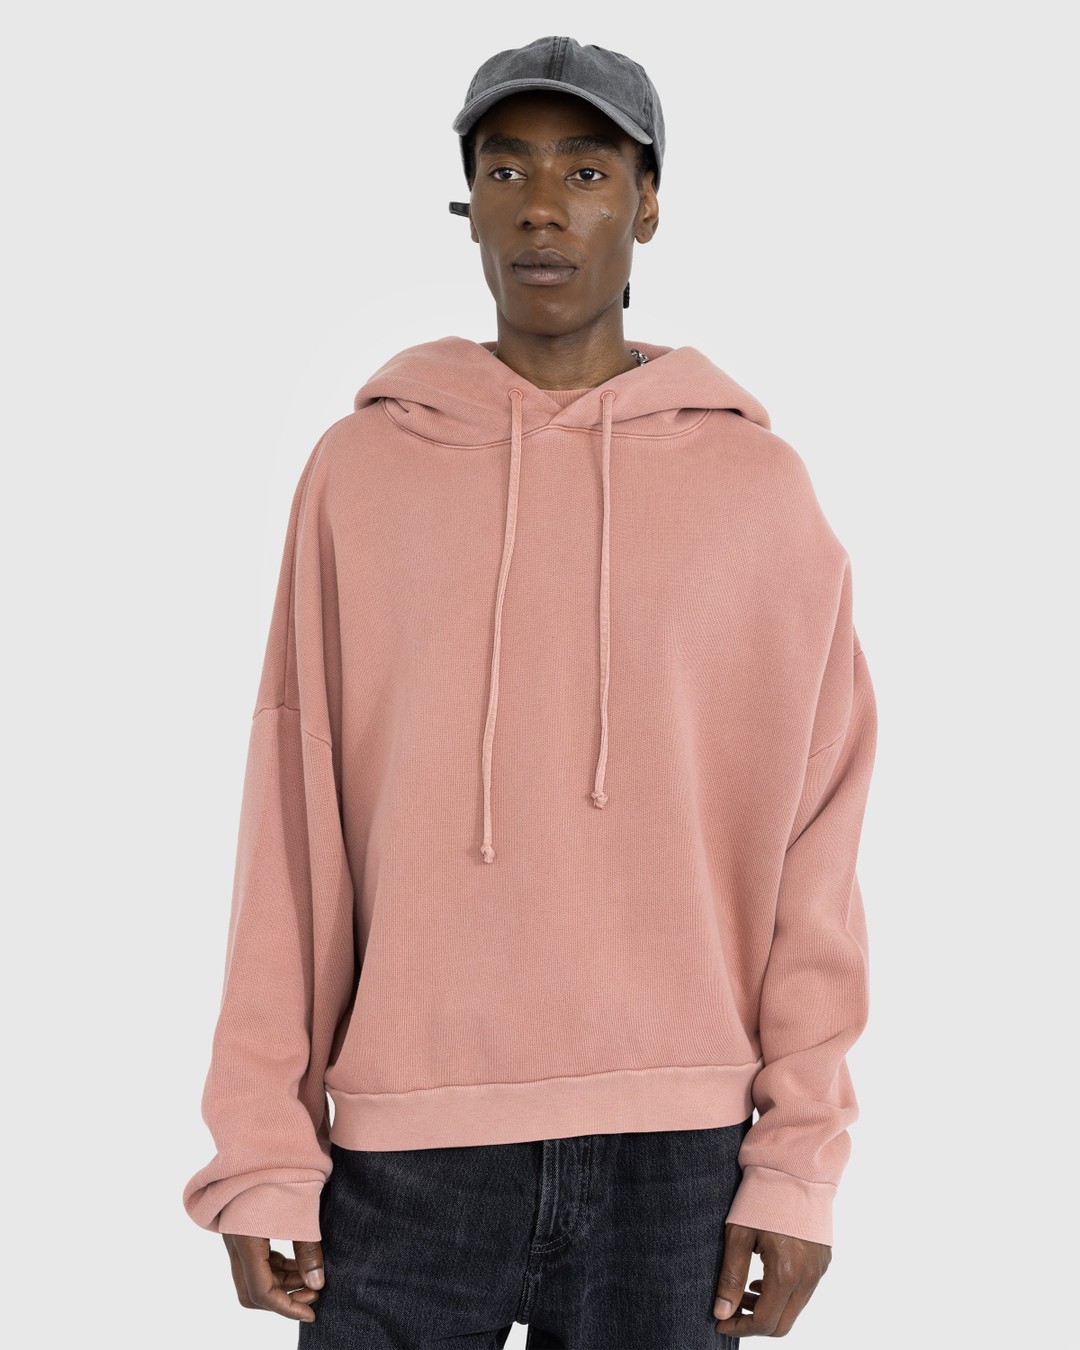 Acne Studios – Hooded Sweatshirt Vintage Pink - Hoodies - Pink - Image 2